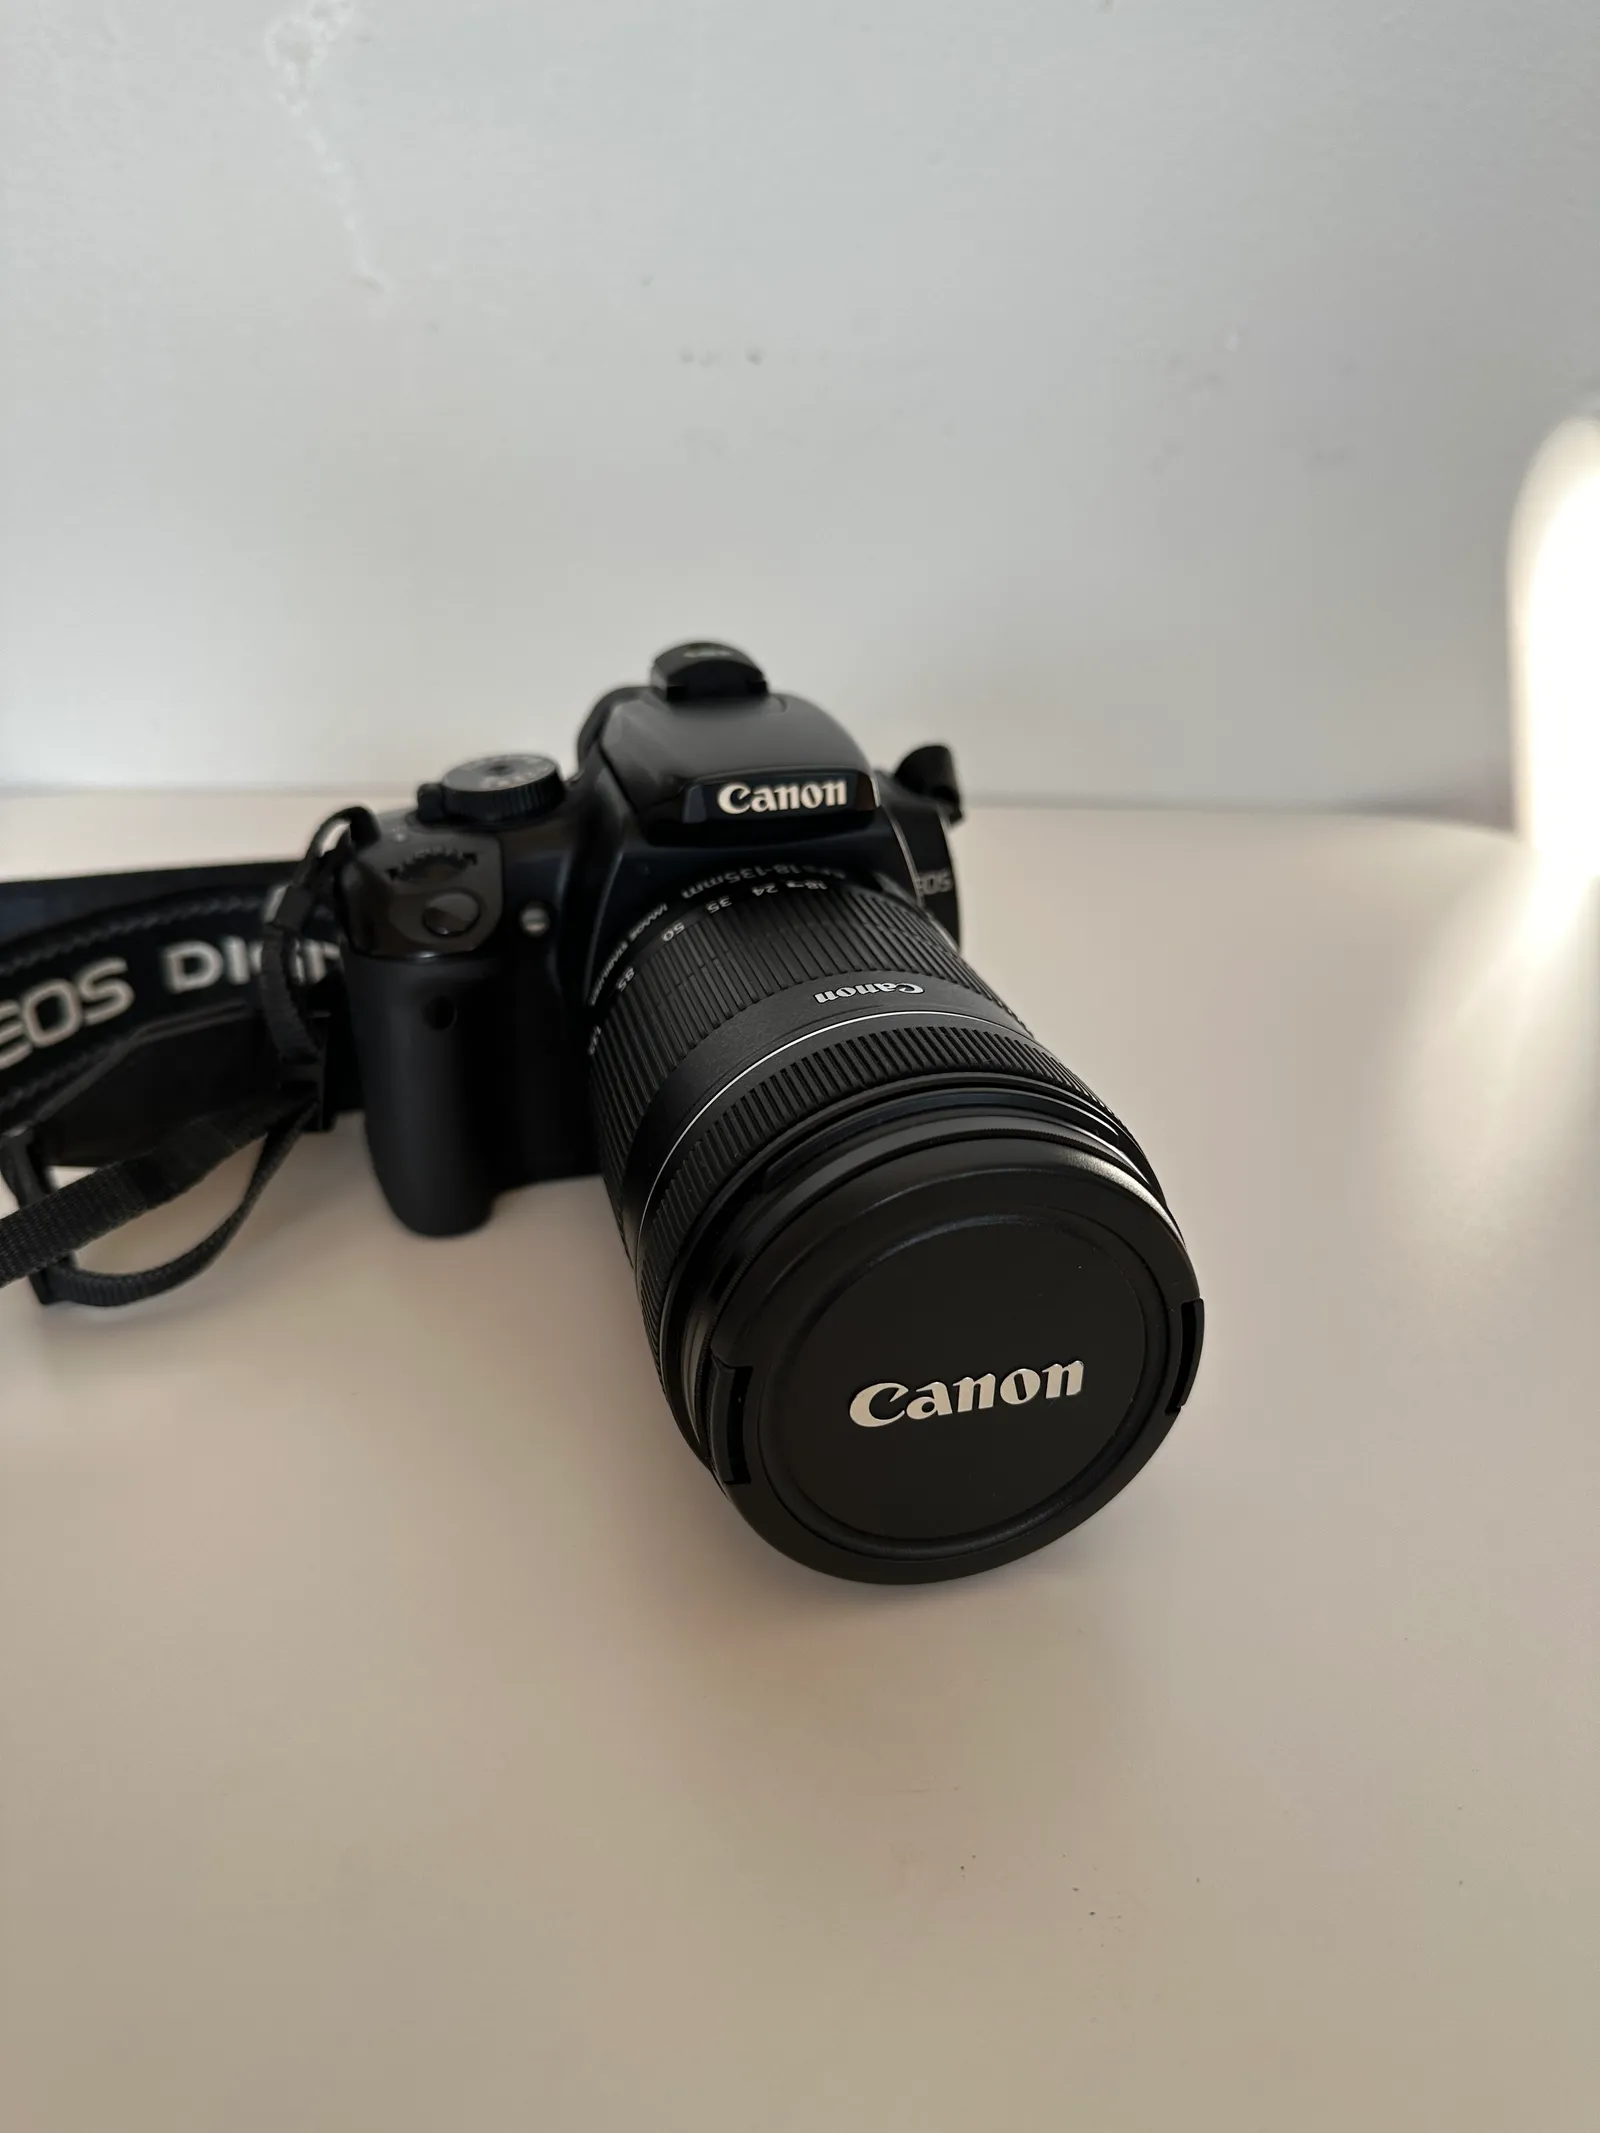 Canon EOS Digital Rebel XTi From Daniel's Gear Shop On Gear Focus